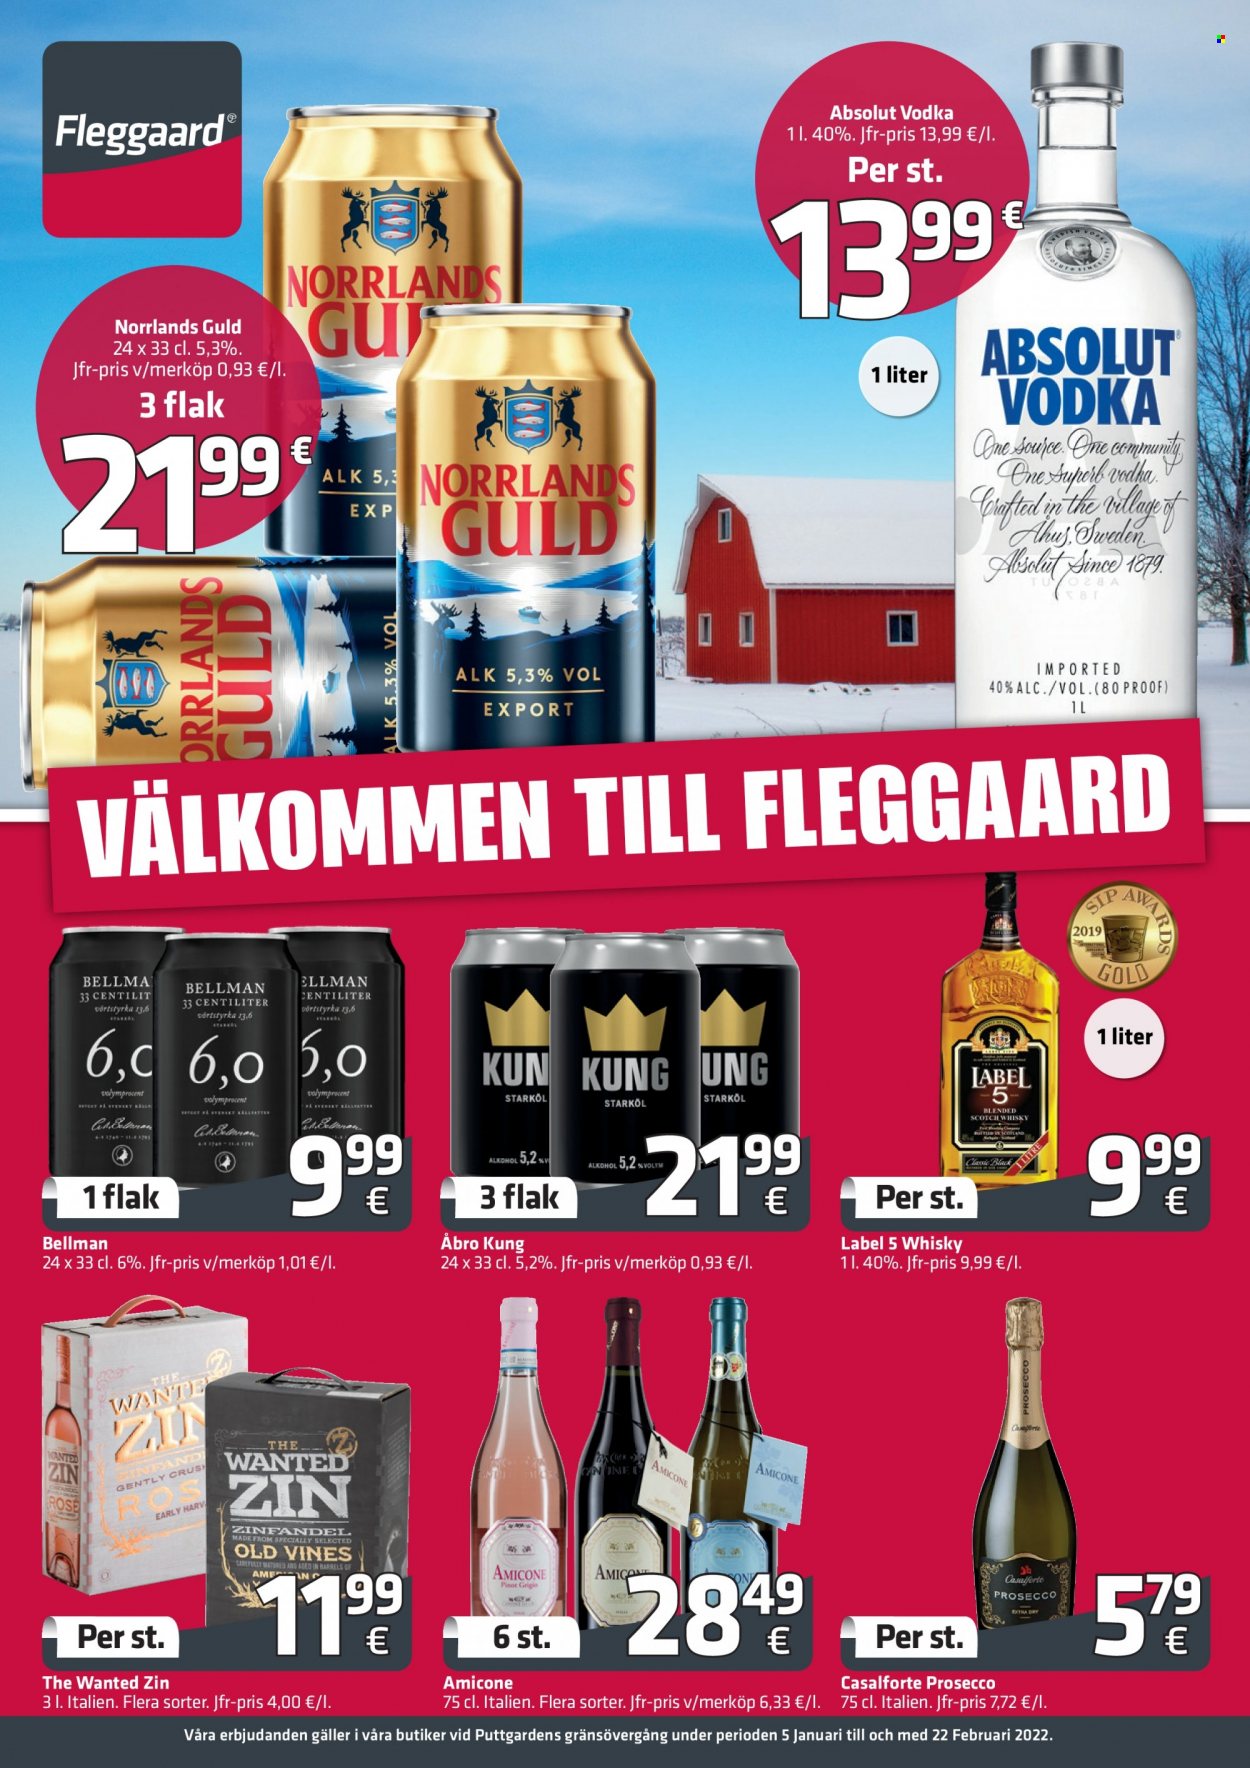 Fleggaard tilbud  - 05.01.2022 - 22.02.2022 - tilbudsprodukter - prosecco, vin, Zinfandel, Absolut, scotch whisky, vodka, whisky. Side 1.